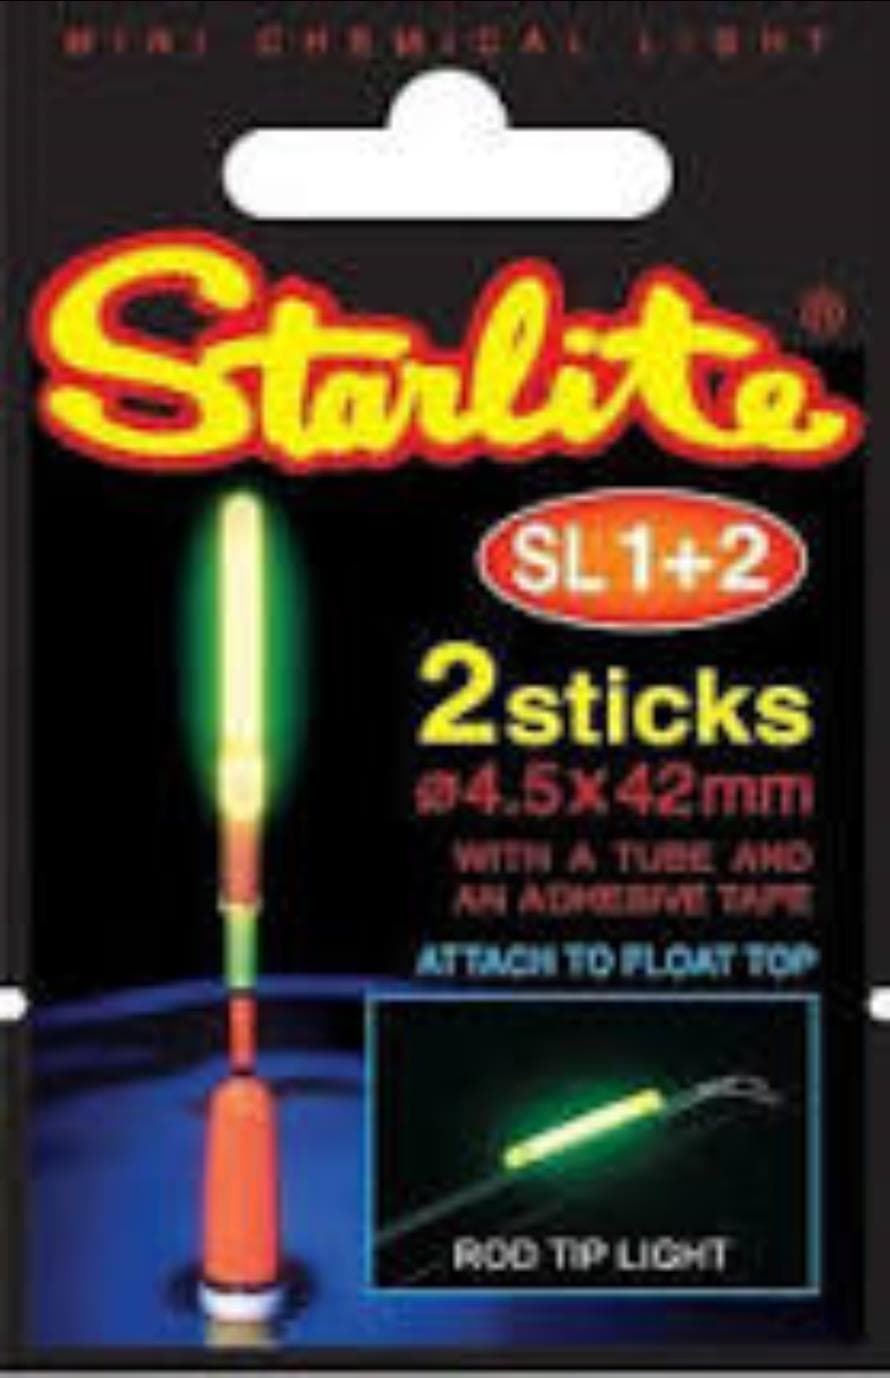 Luces químicas Starlite 4.5x42mm - Imagen 1